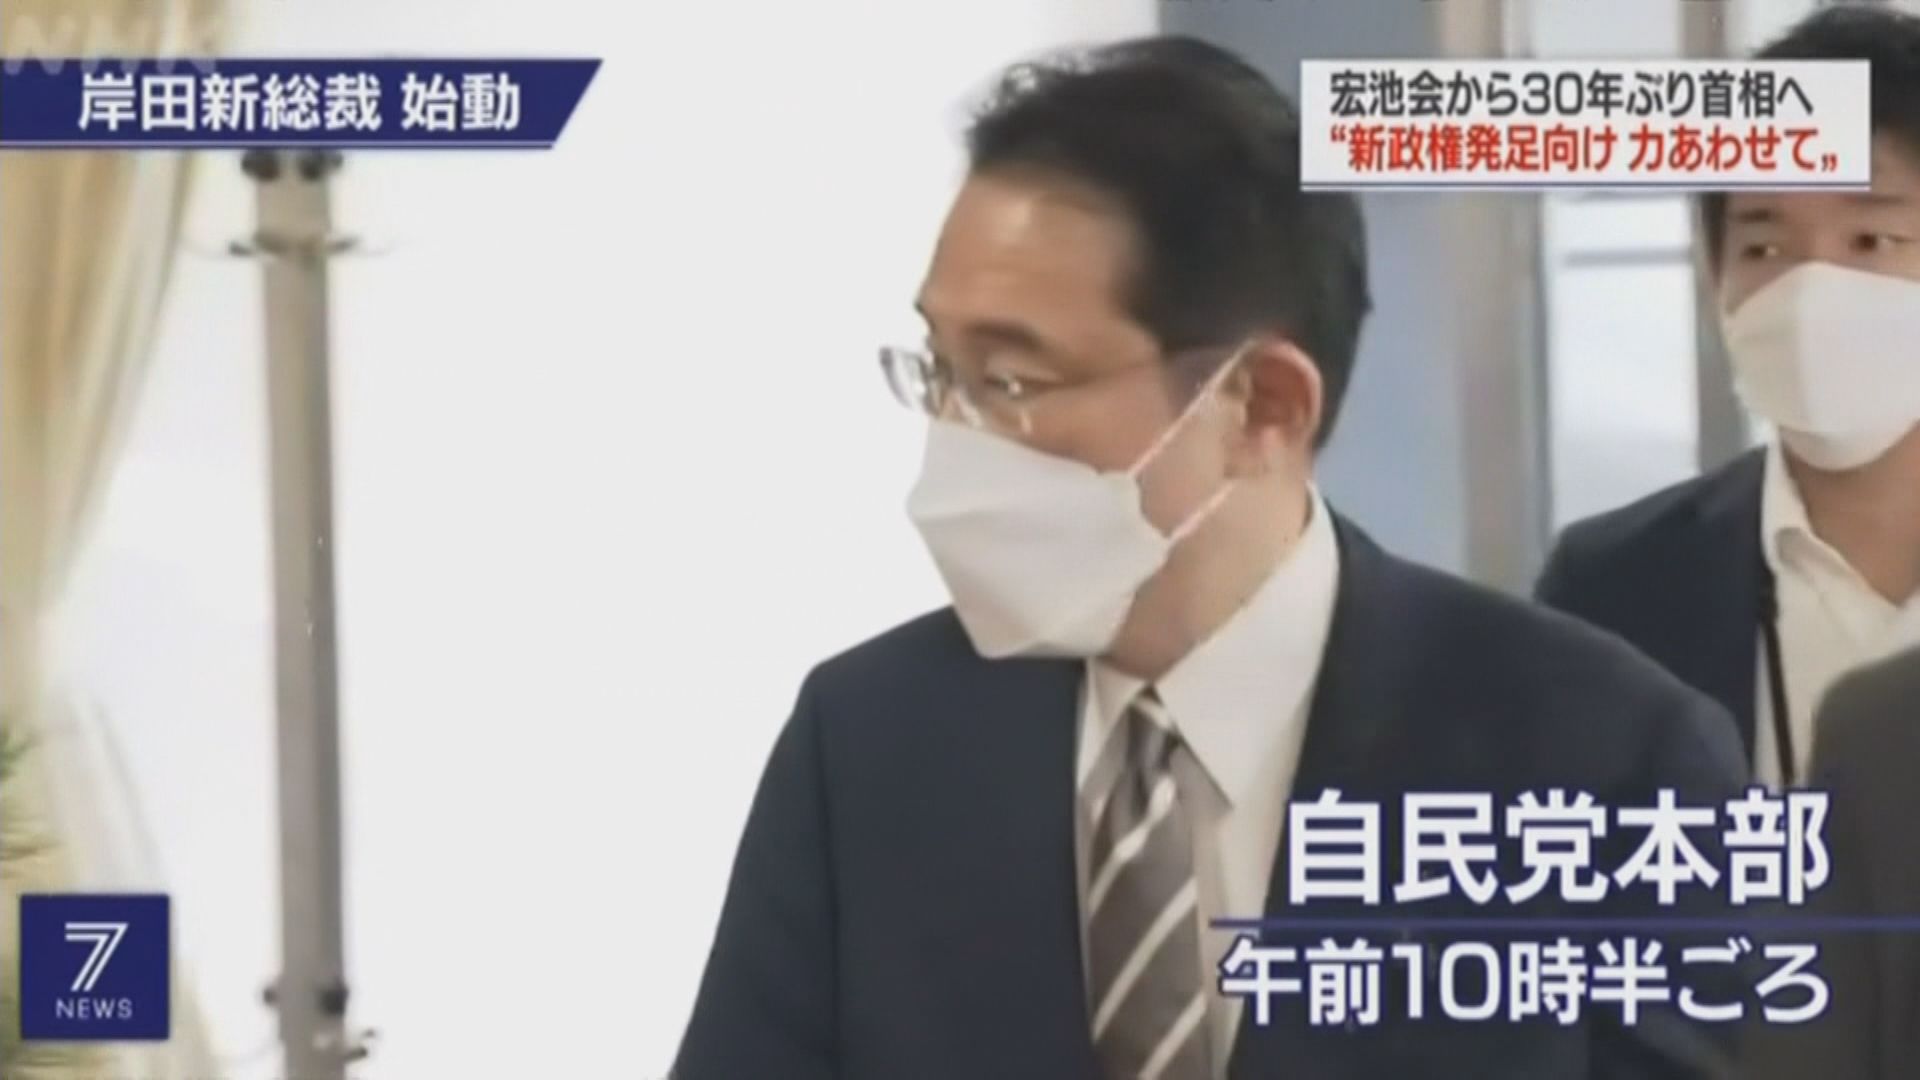 日媒稱岸田文雄初步確定二十人的新內閣